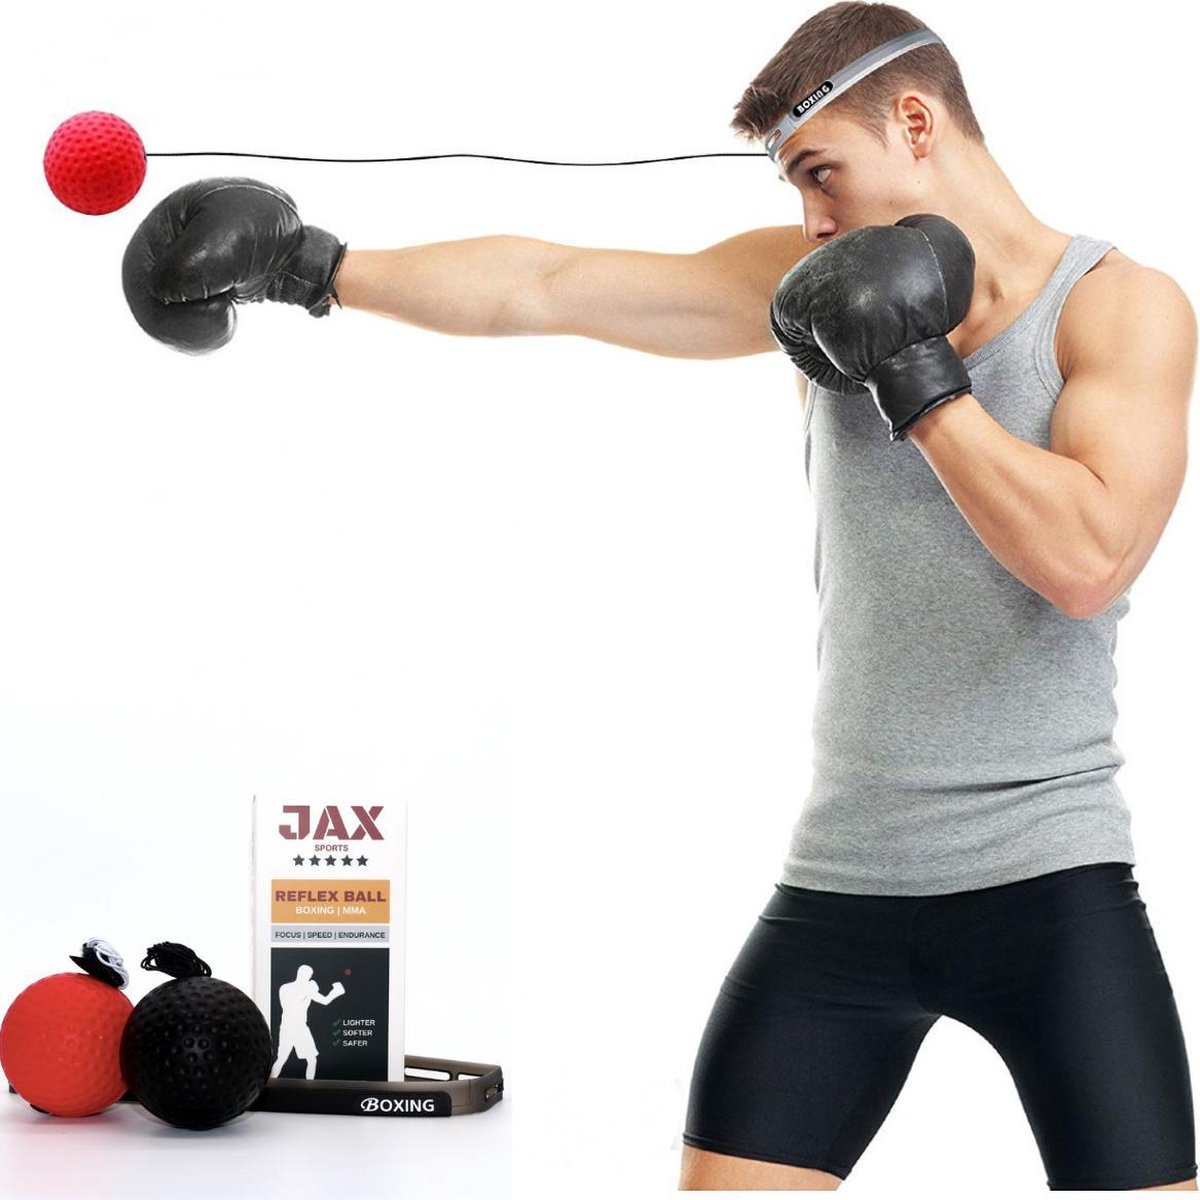 Fantasie Absorberen oog JAX Reflex bal - 2 Ballen - Kickbox - Workout | bol.com